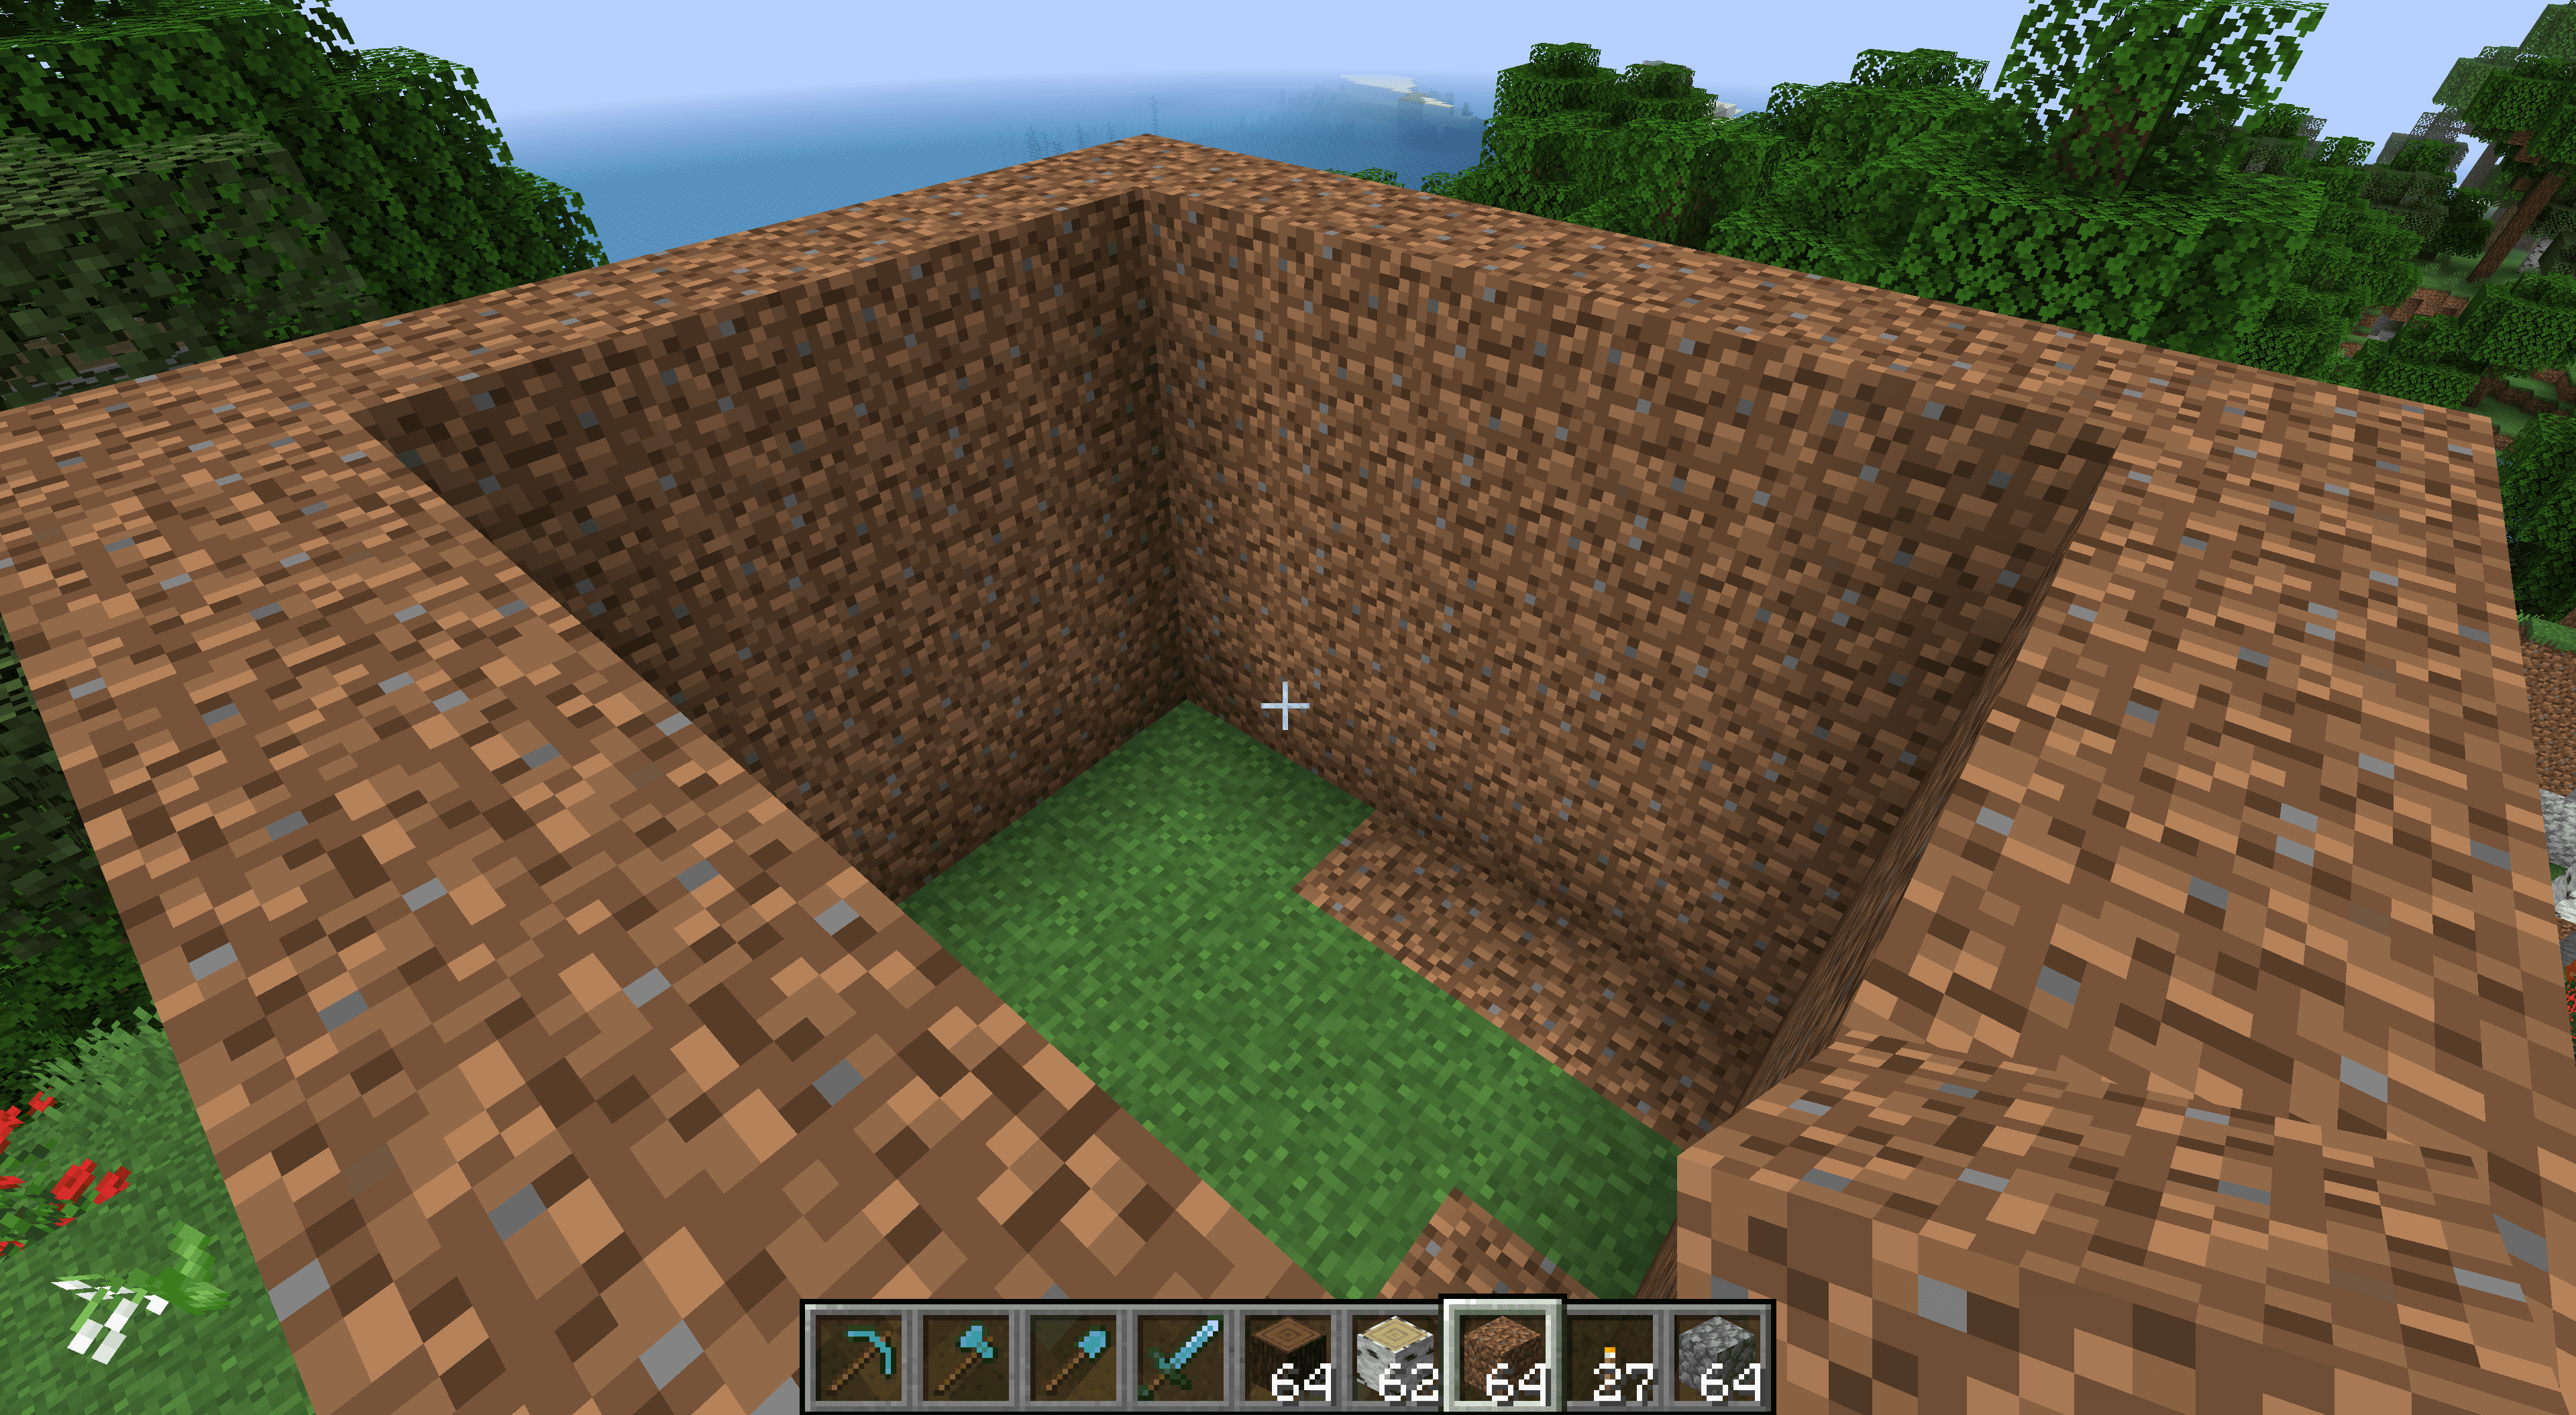 Vuile muren voor een Minecraft-huis.